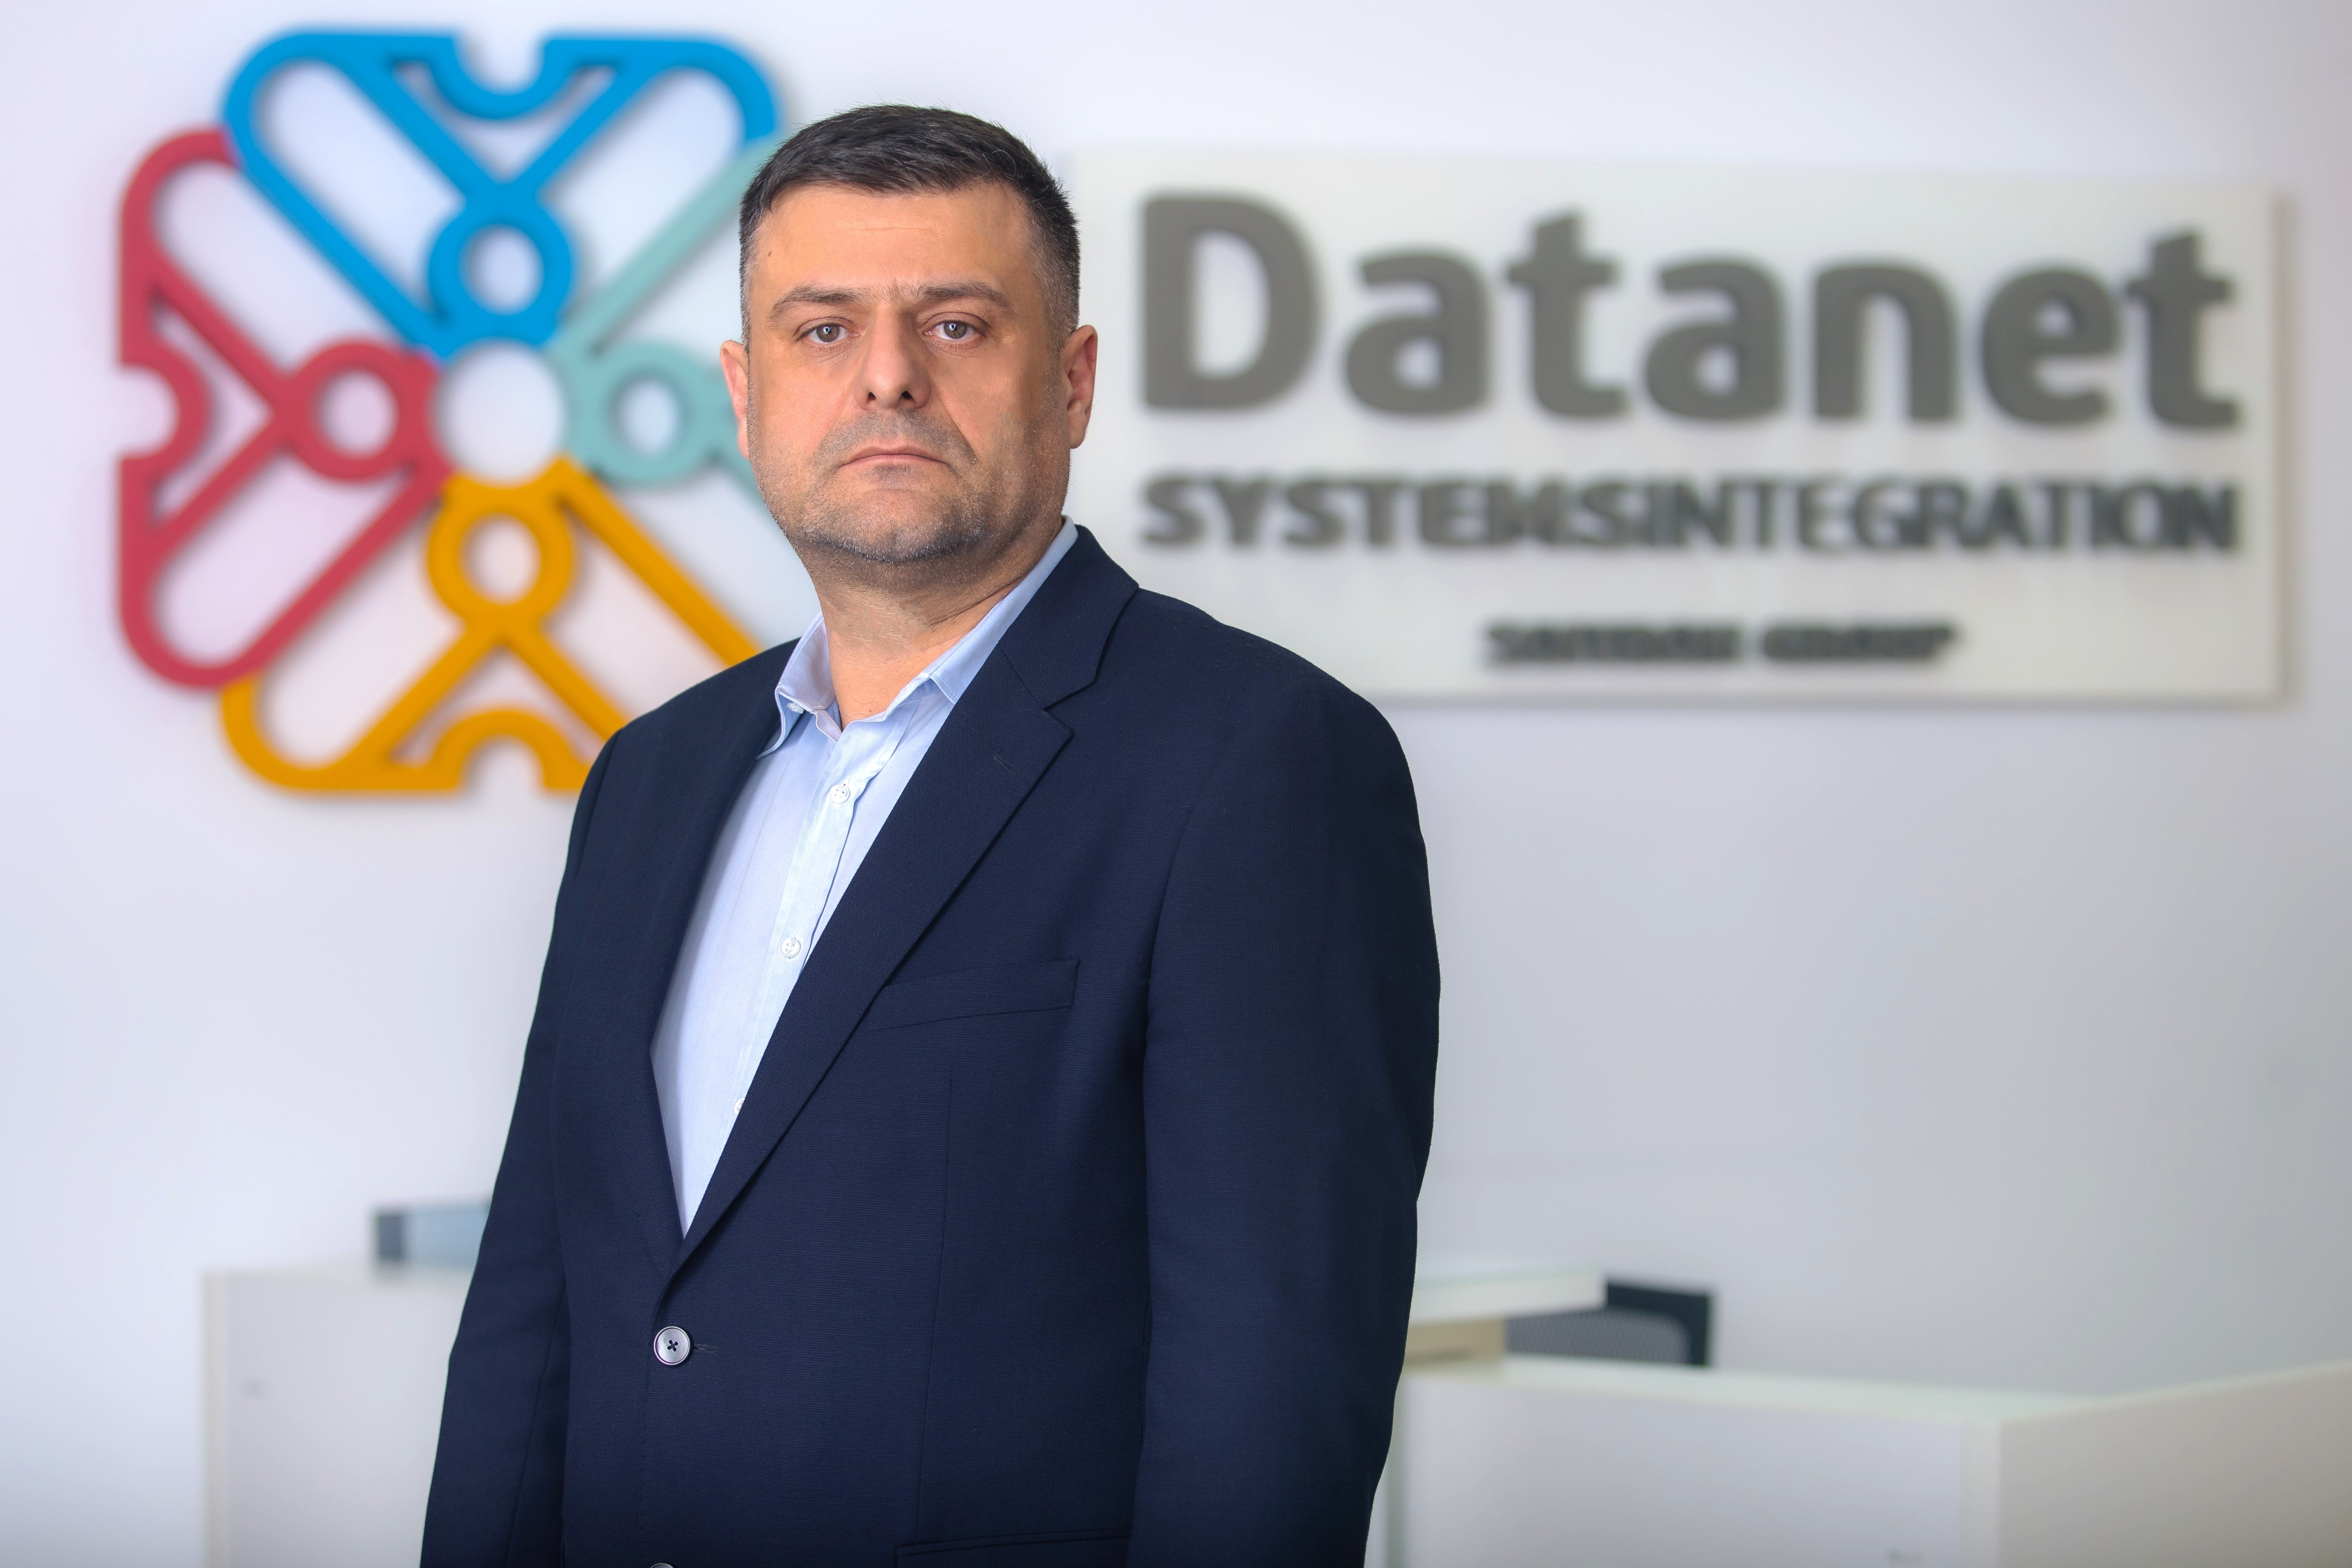 Centrele de date Tenaris Silcotube modernizate de Datanet Systems Cluj